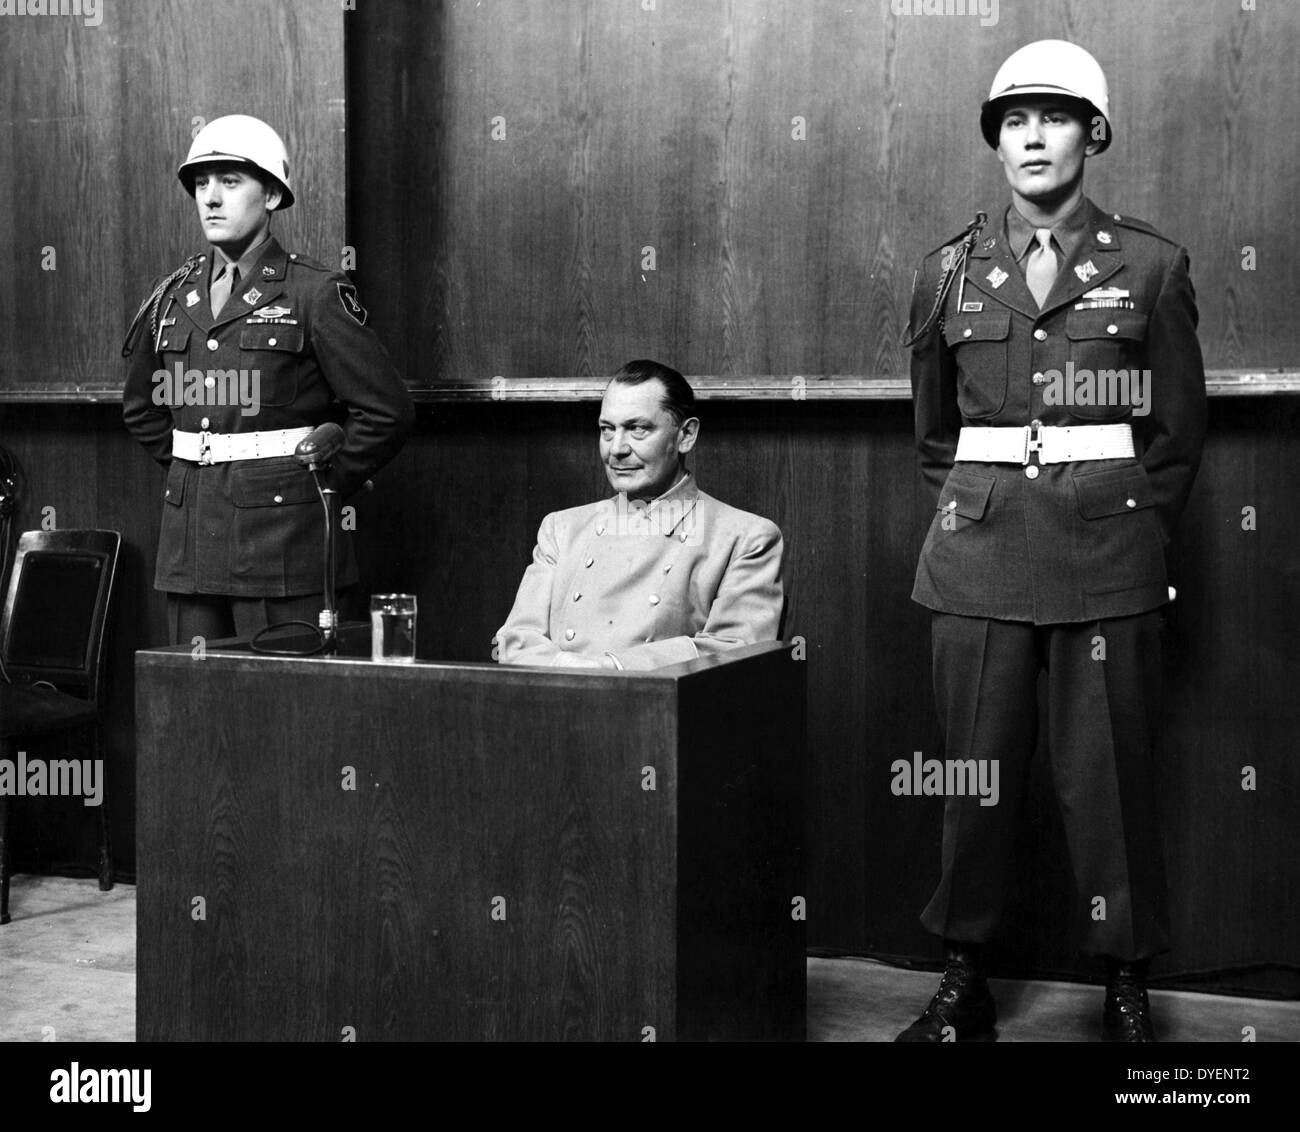 Hermann Wilhelm Göring Janvier 1893 - octobre 1946, homme politique allemand, chef militaire à son procès pour crimes de guerre 1946 Banque D'Images